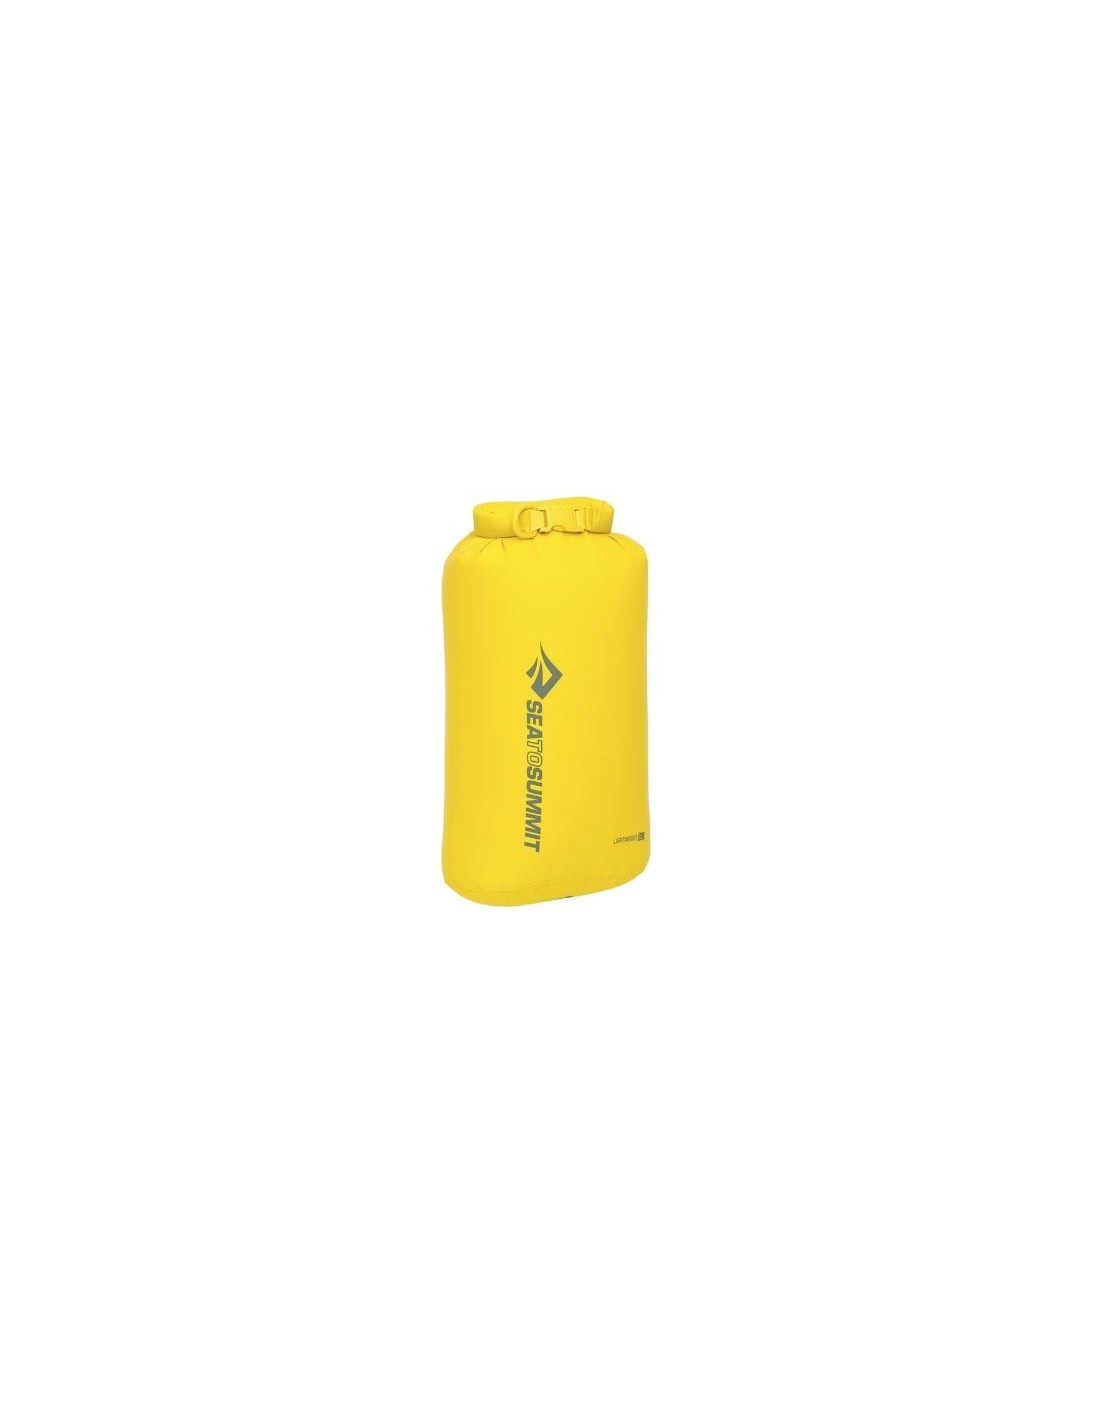 Sea To Summit Lightweight Dry Bag 5 Liter, sulphur yellow von Sea To Summit